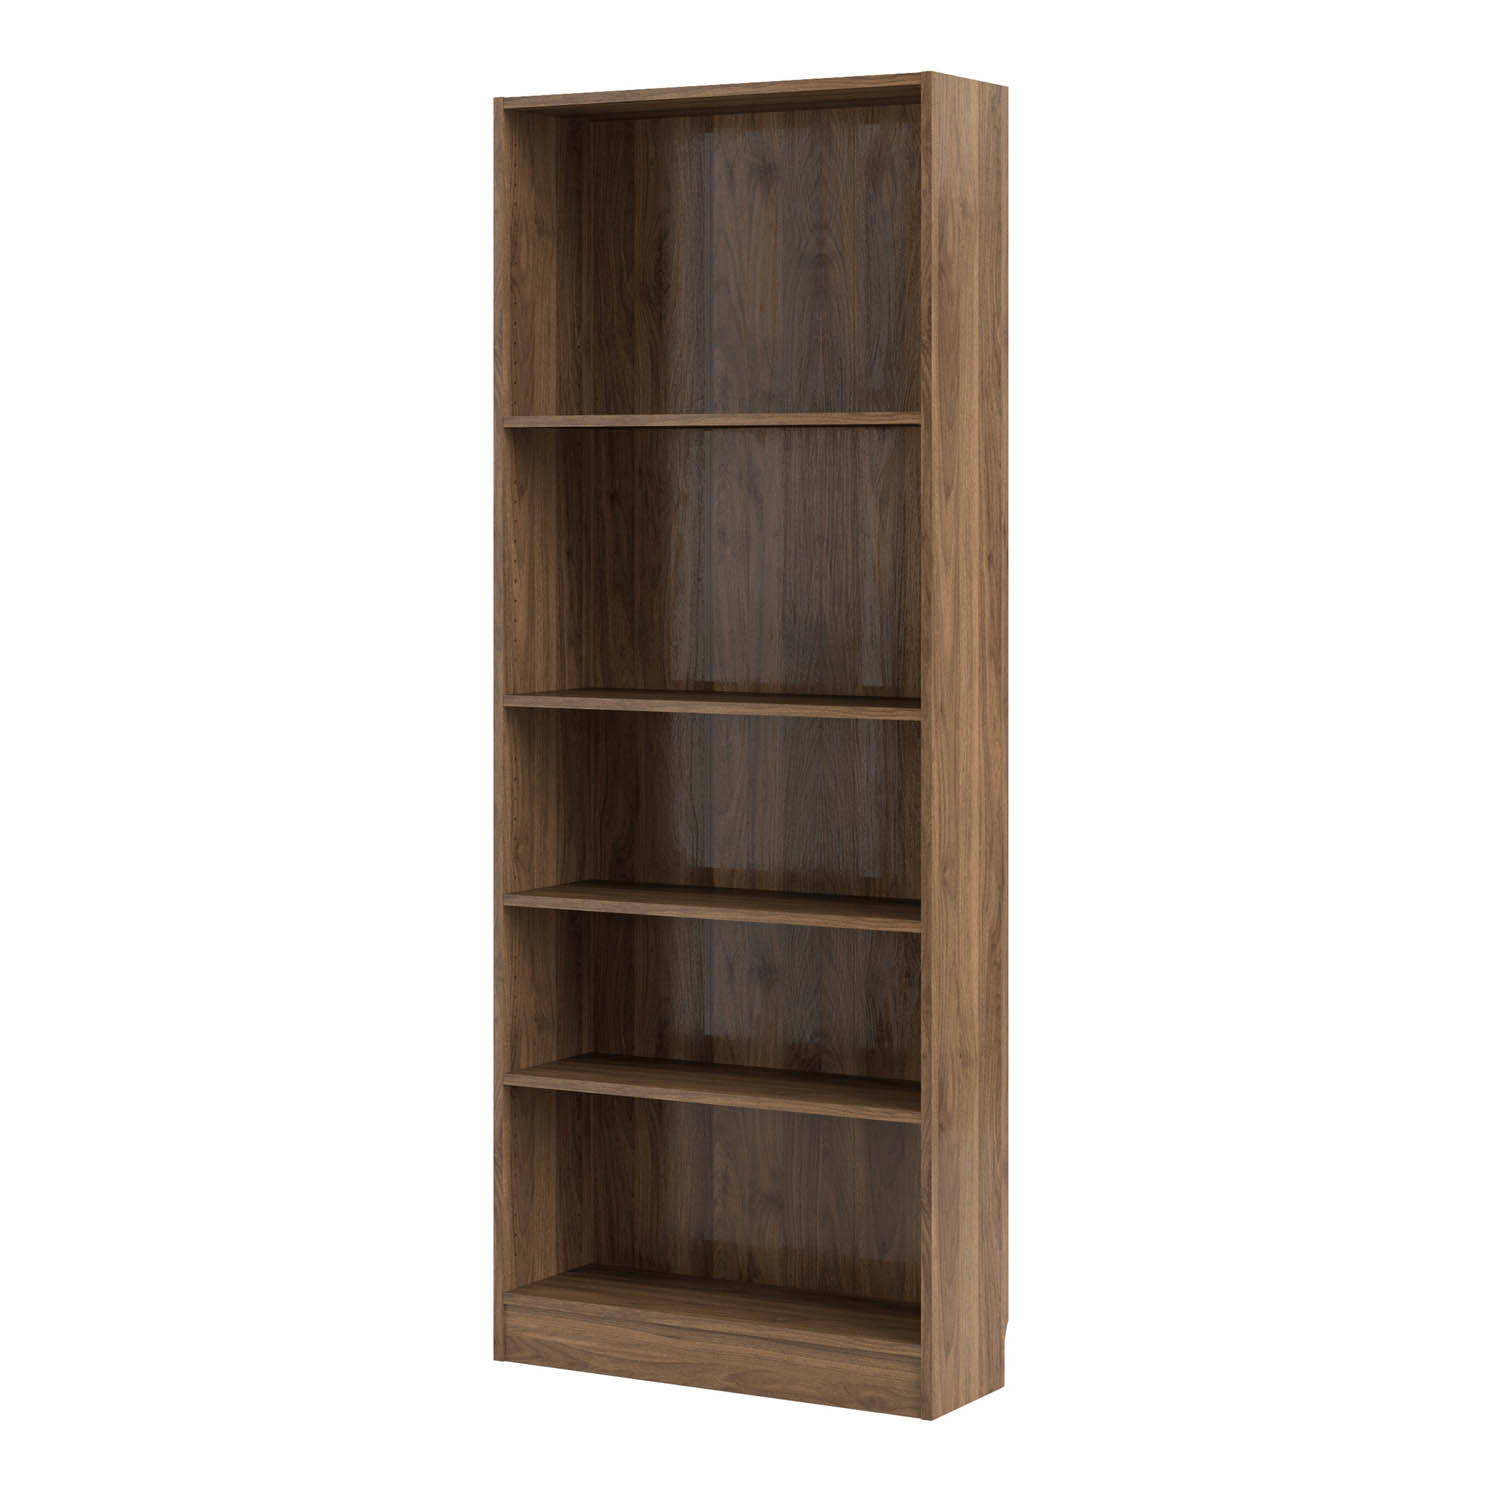 adjustable bookshelf 2 feet wide